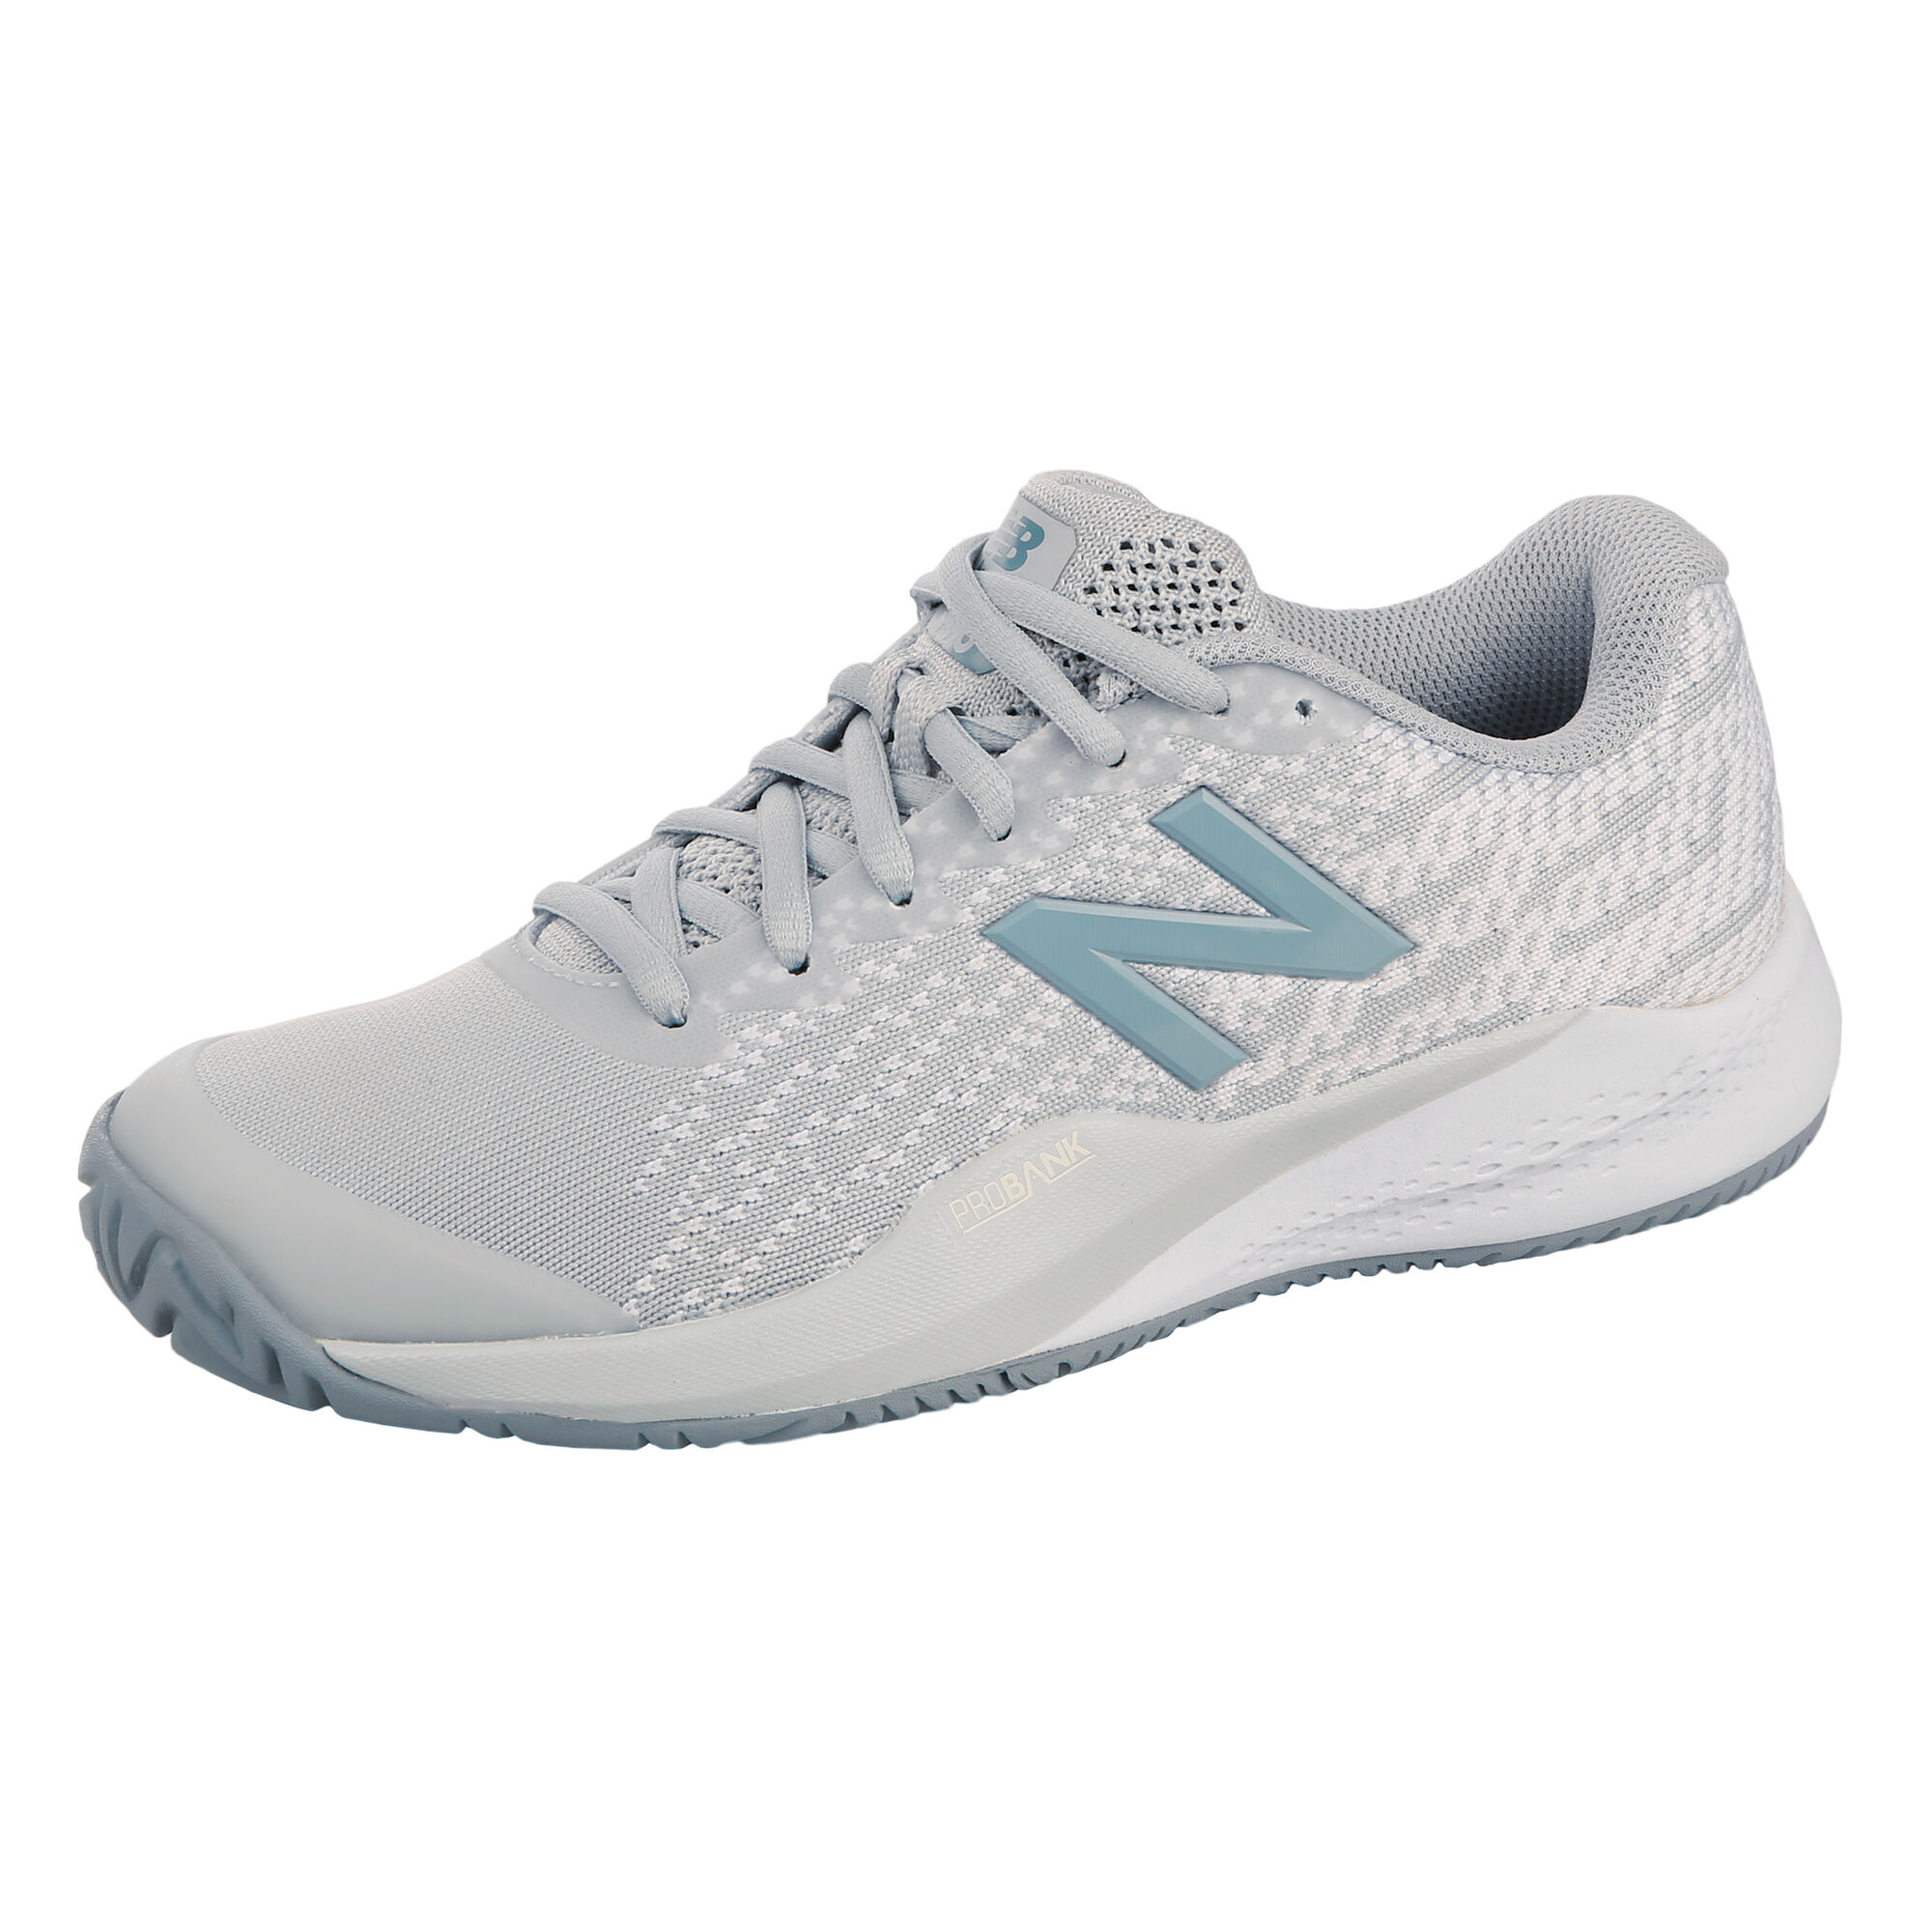 buy New Balance 996 V3 All Court Shoe Women - Lightgrey, White online ...